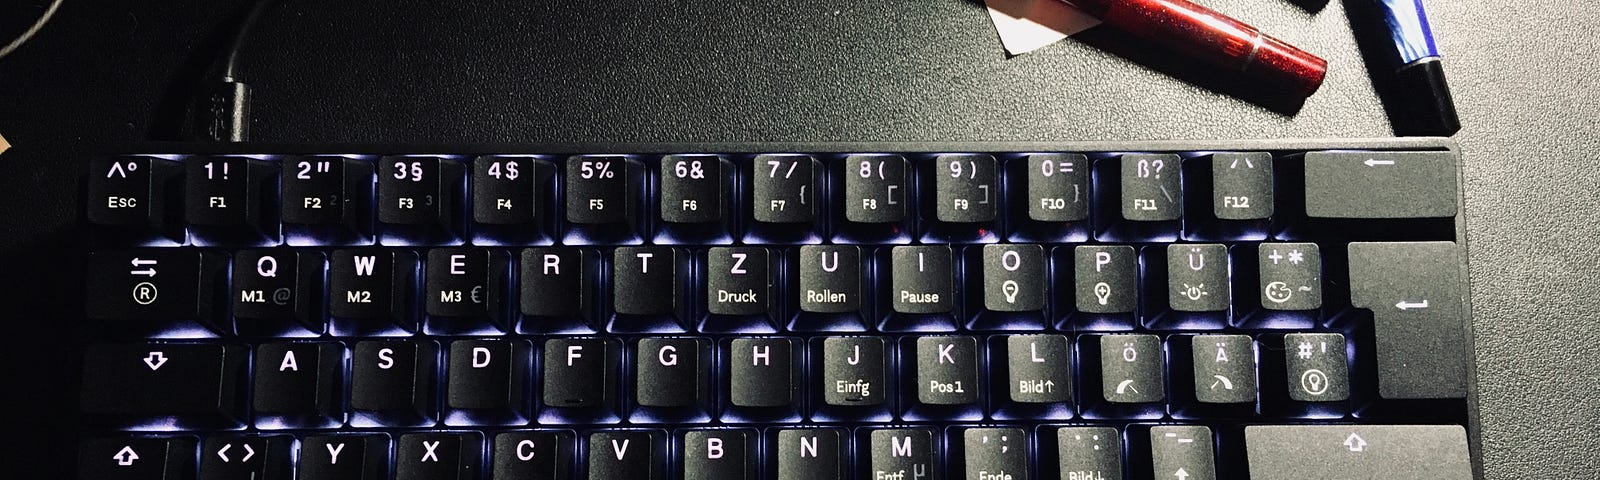 a mechanical keyboard on a deskmat